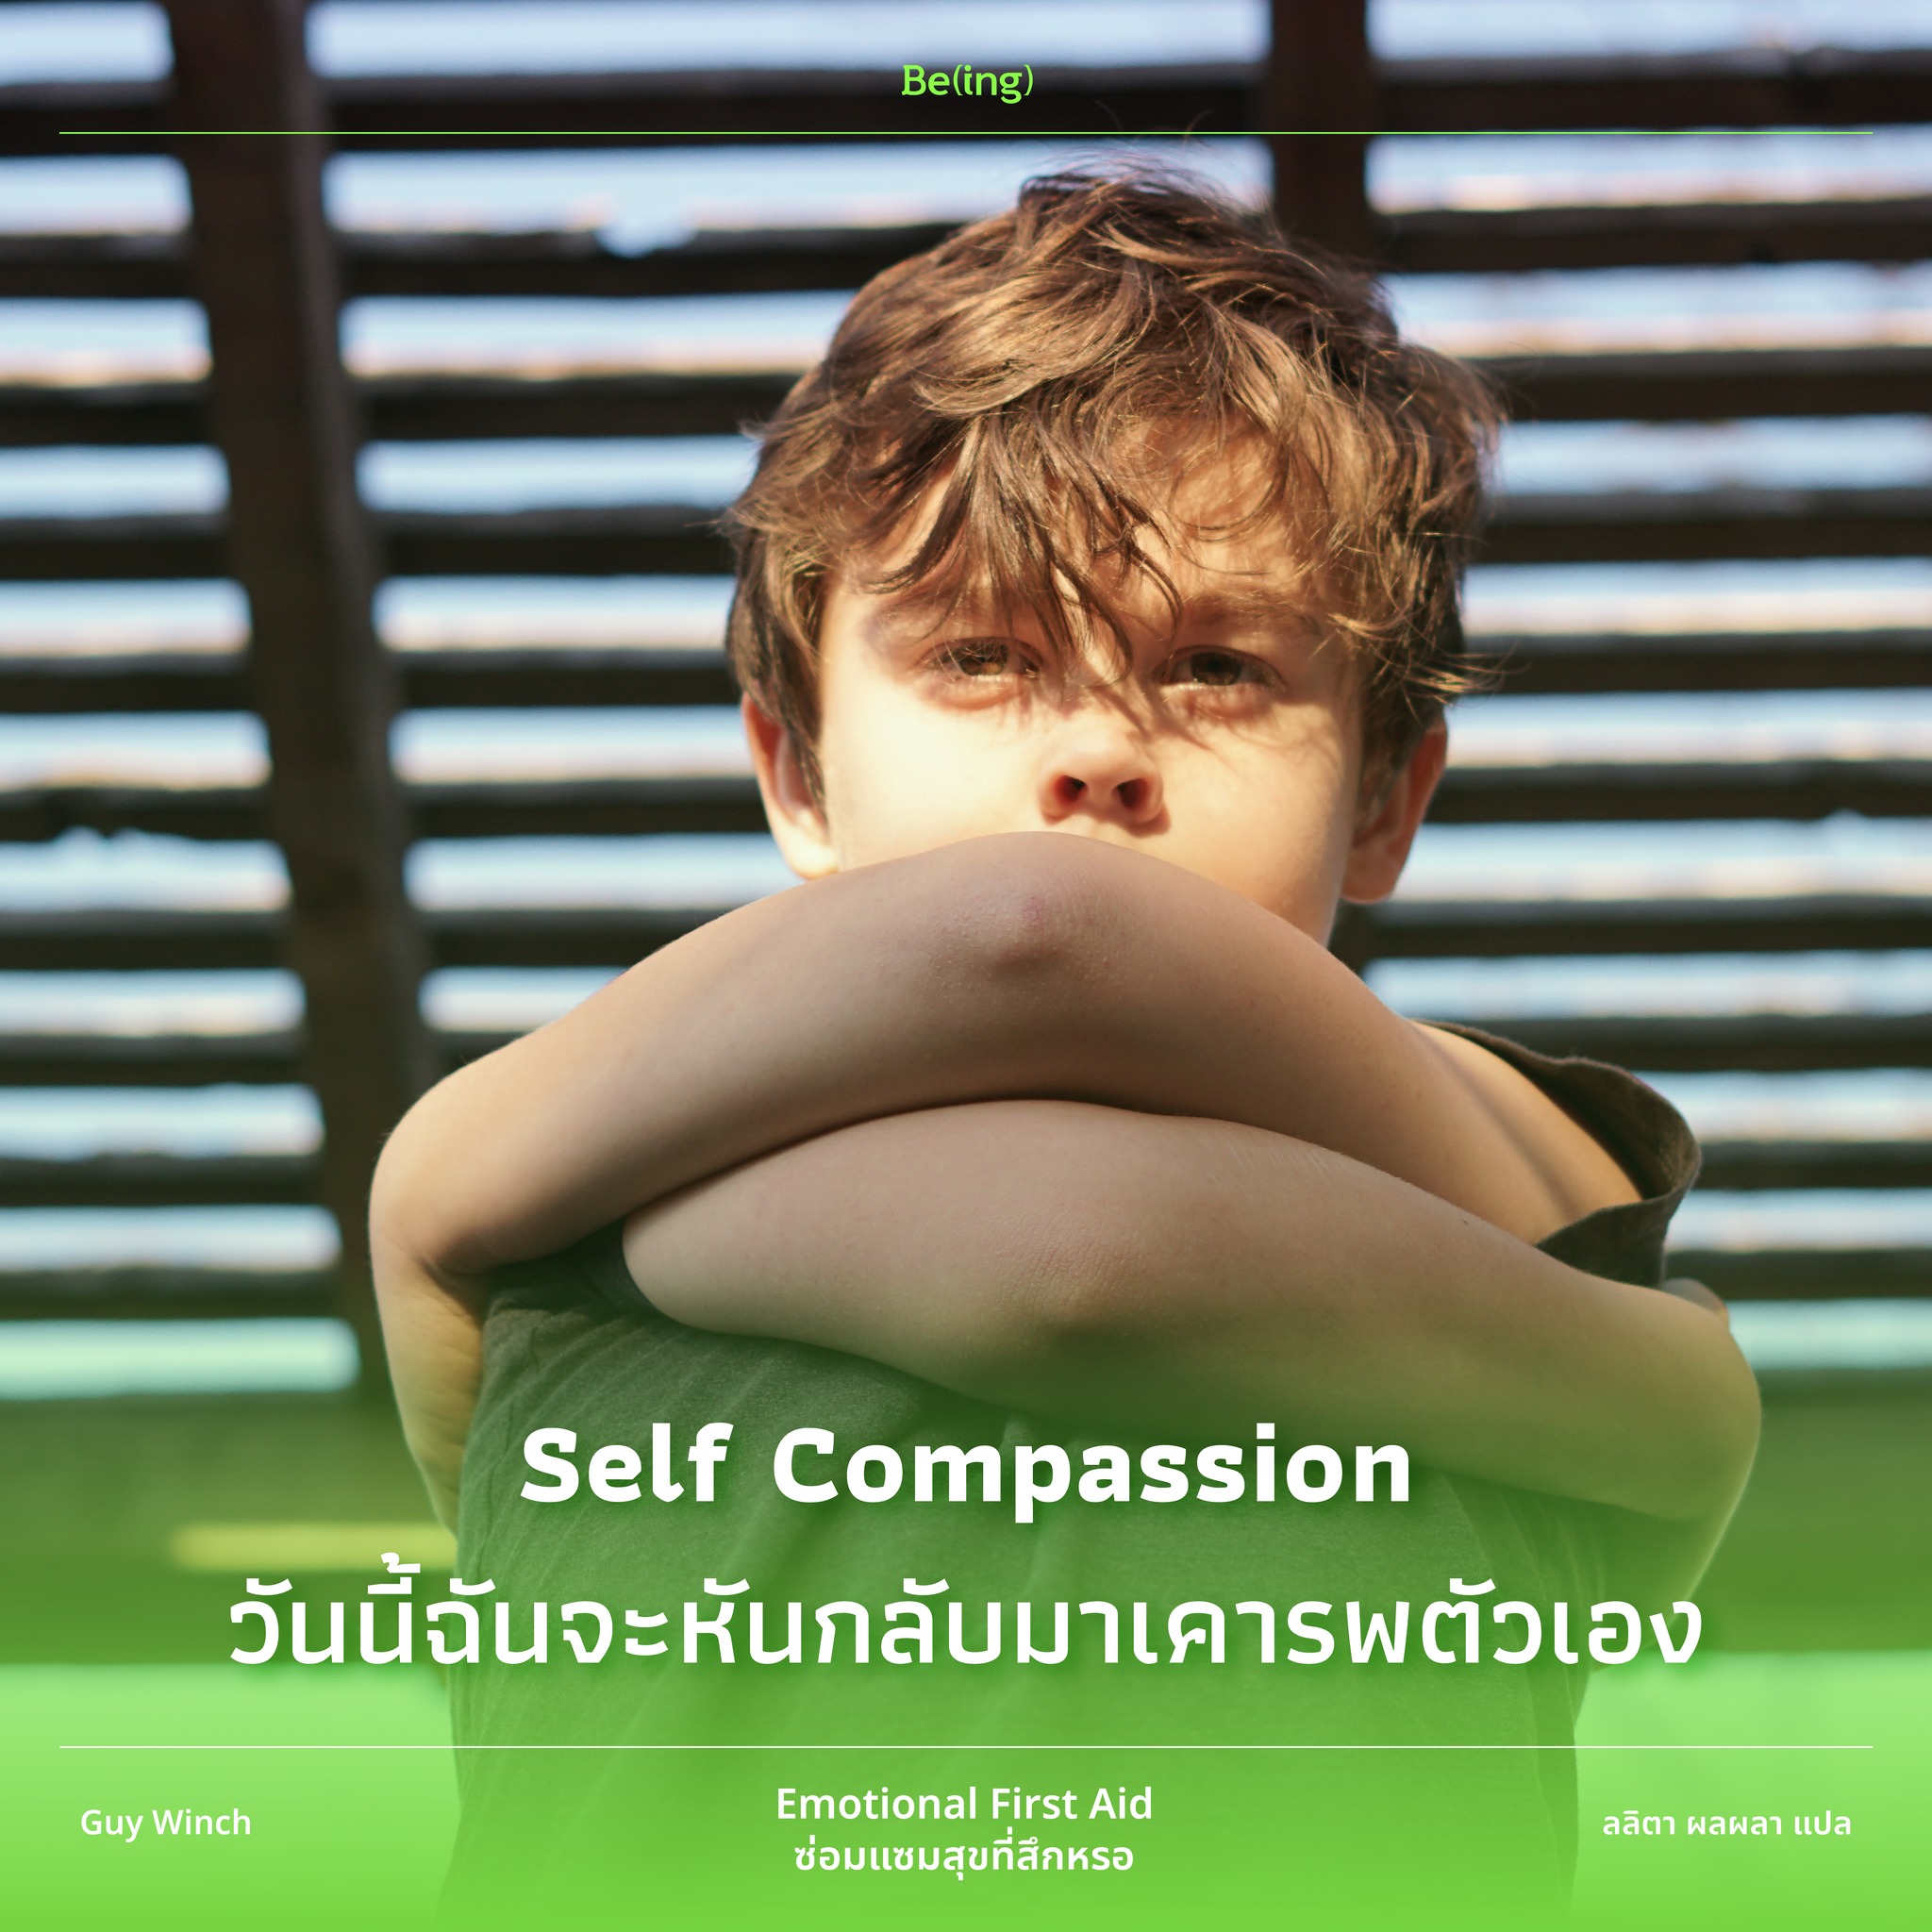 Self Compassion วันนี้ฉันจะหันกลับมาเคารพตัวเอง